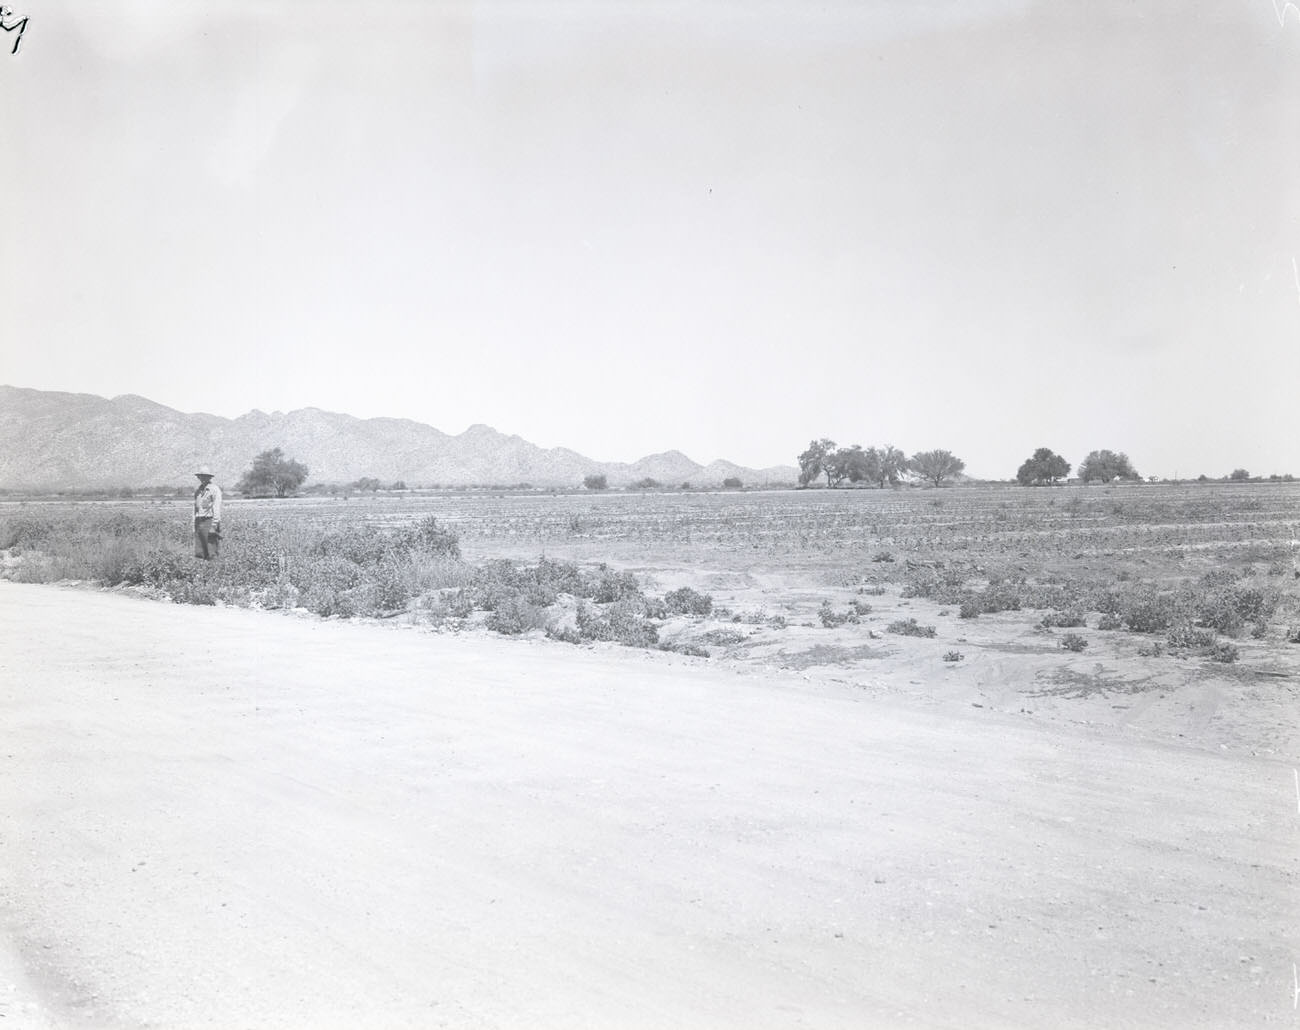 Road in Desert, 1942